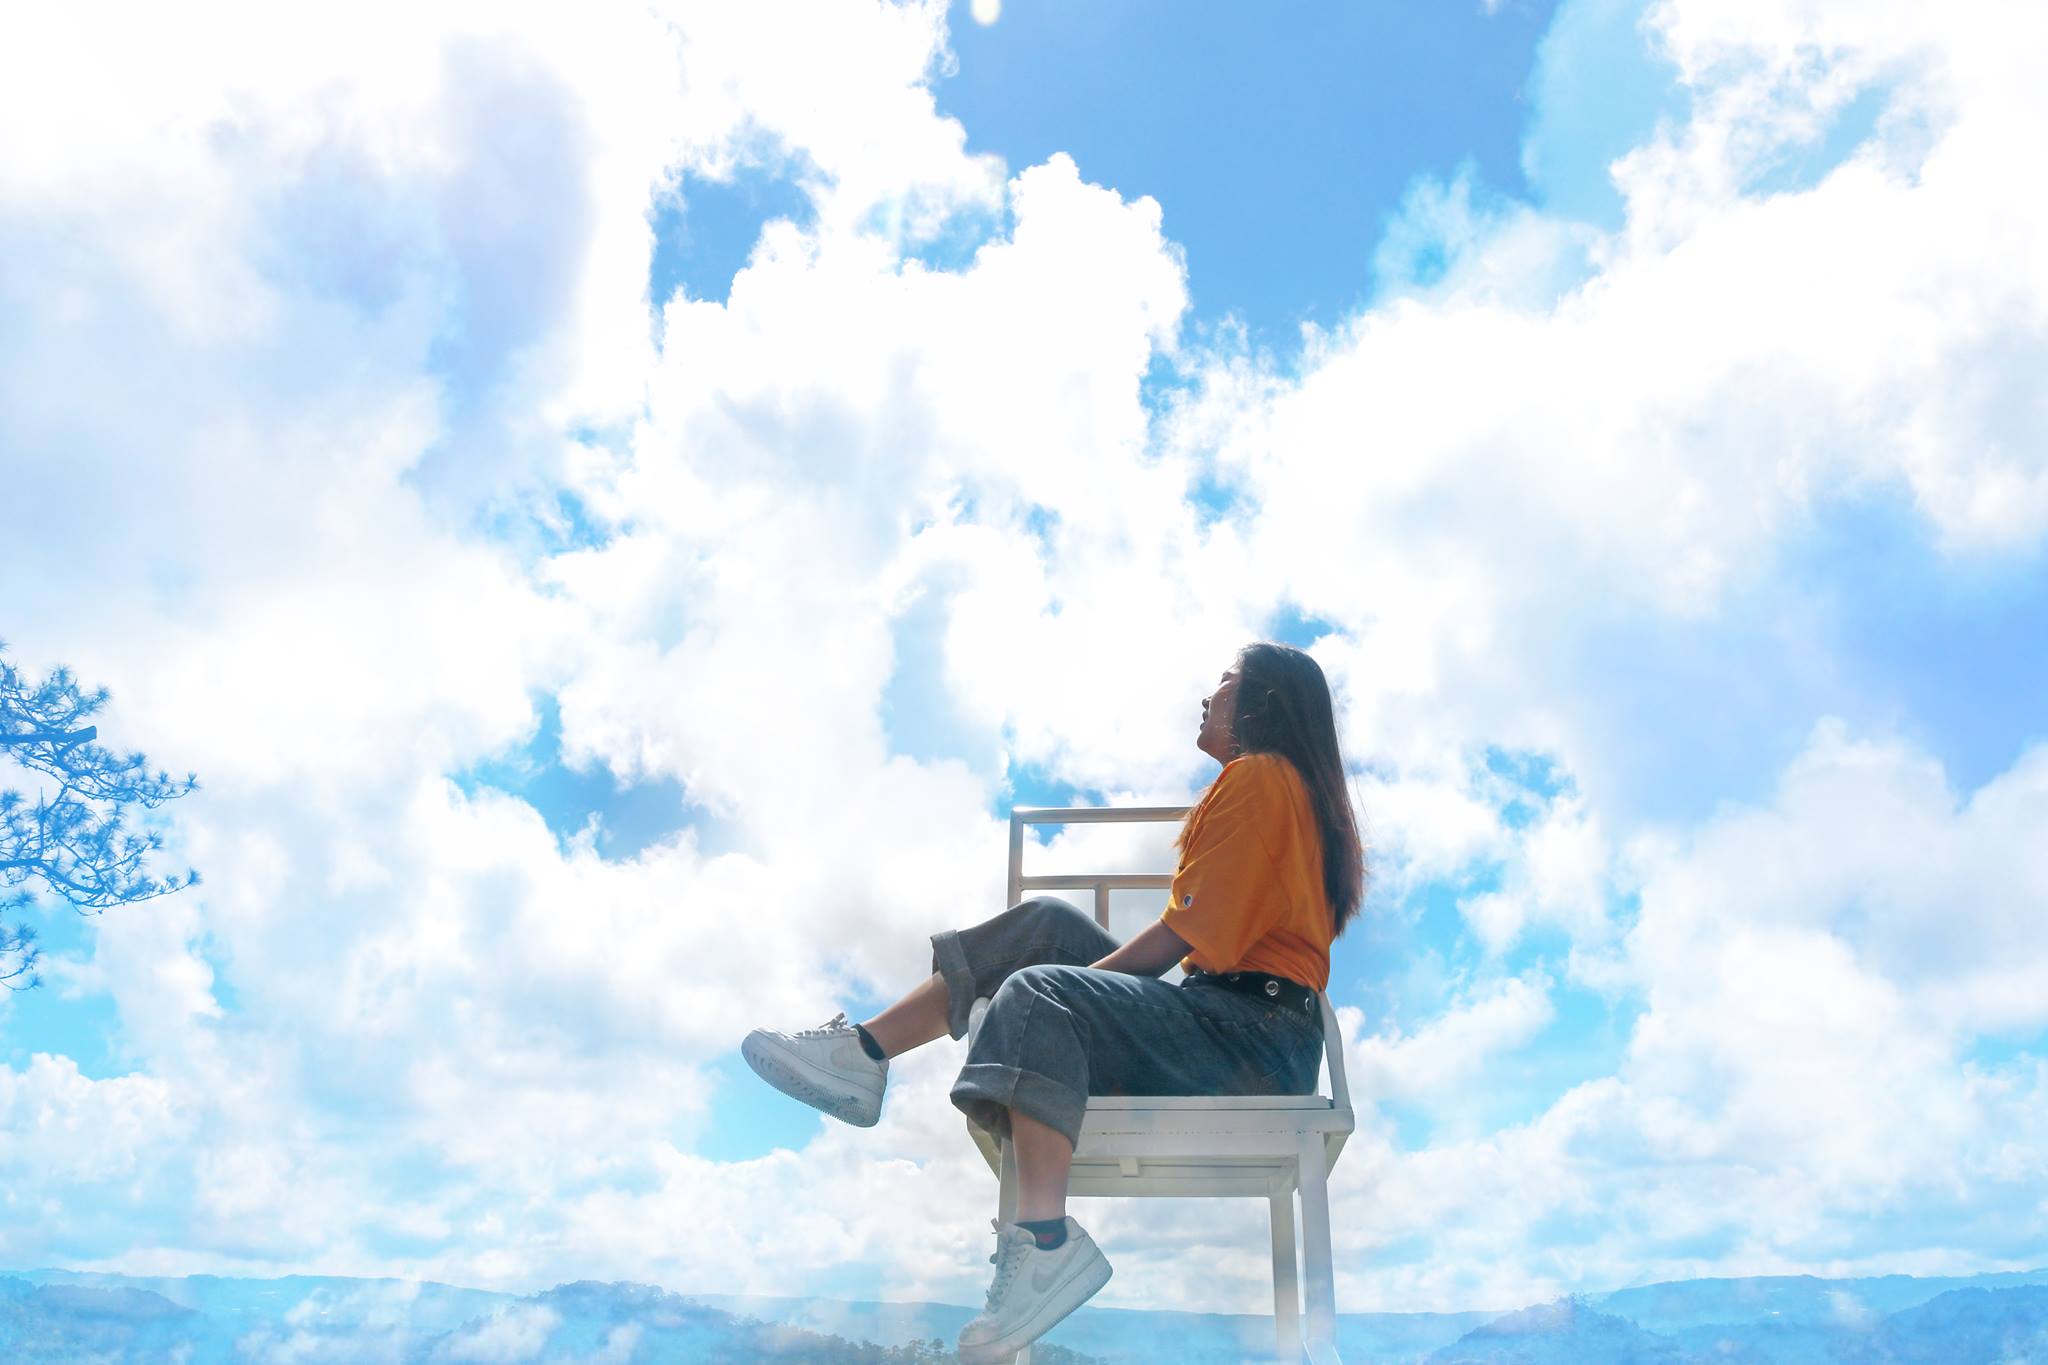 Quên cầu thang trắng đi, giờ Đà Lạt còn xuất hiện thêm “ghế săn mây” chụp ảnh ảo hơn gấp tỉ lần